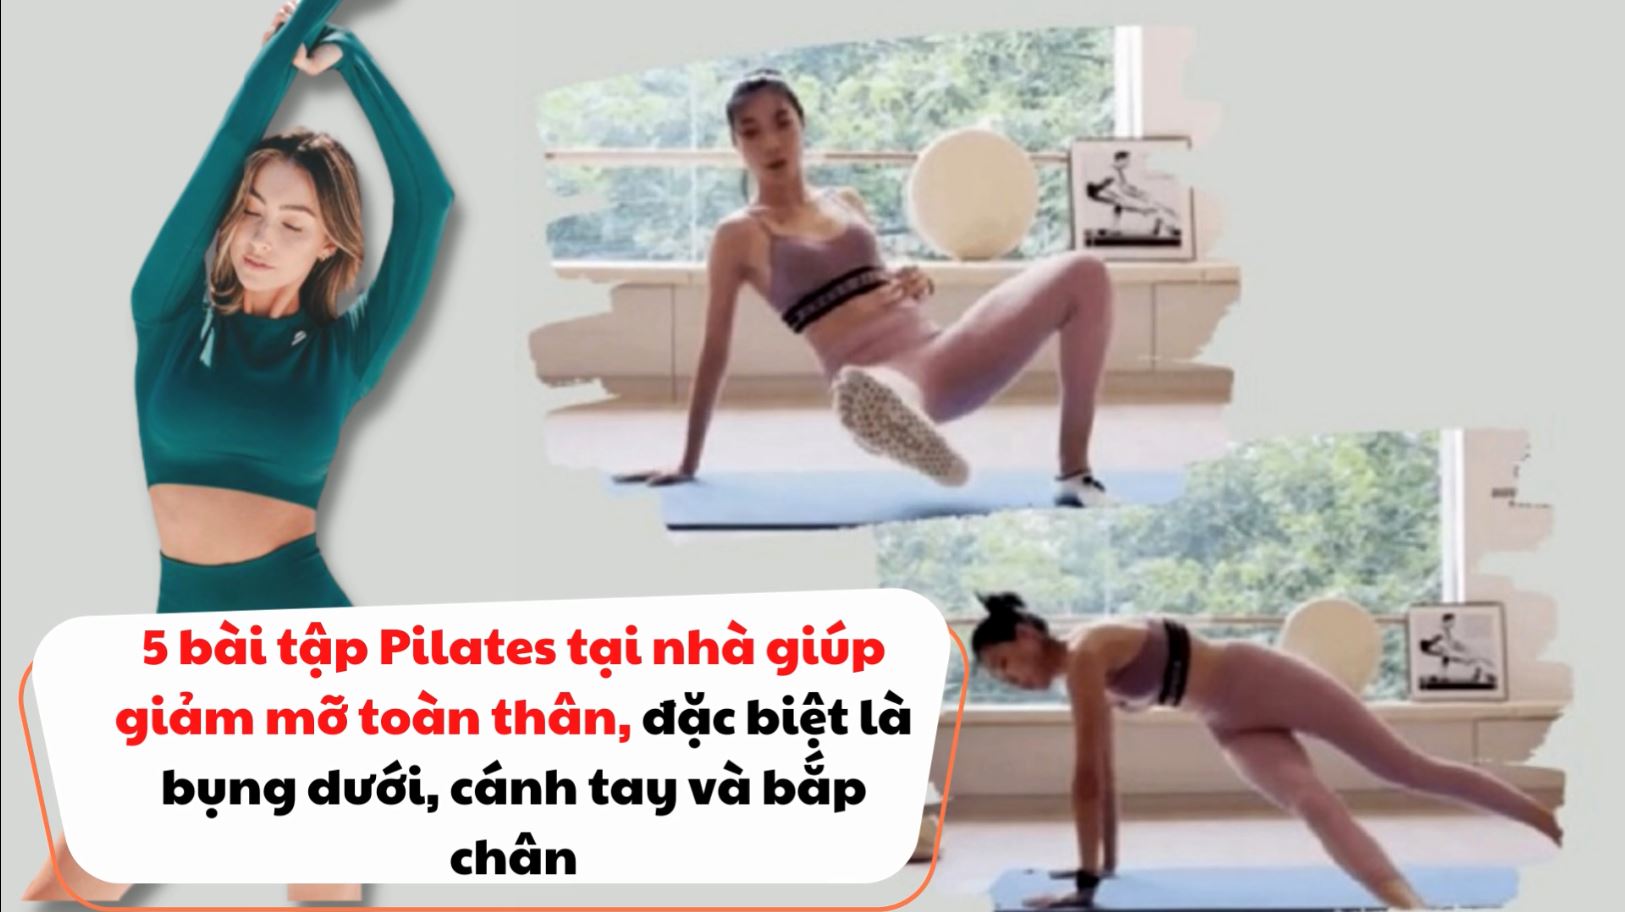 5  bài tập Pilates tại nhà giúp giảm mỡ toàn thân, đặc biệt là bụng dưới, cánh tay và bắp chân